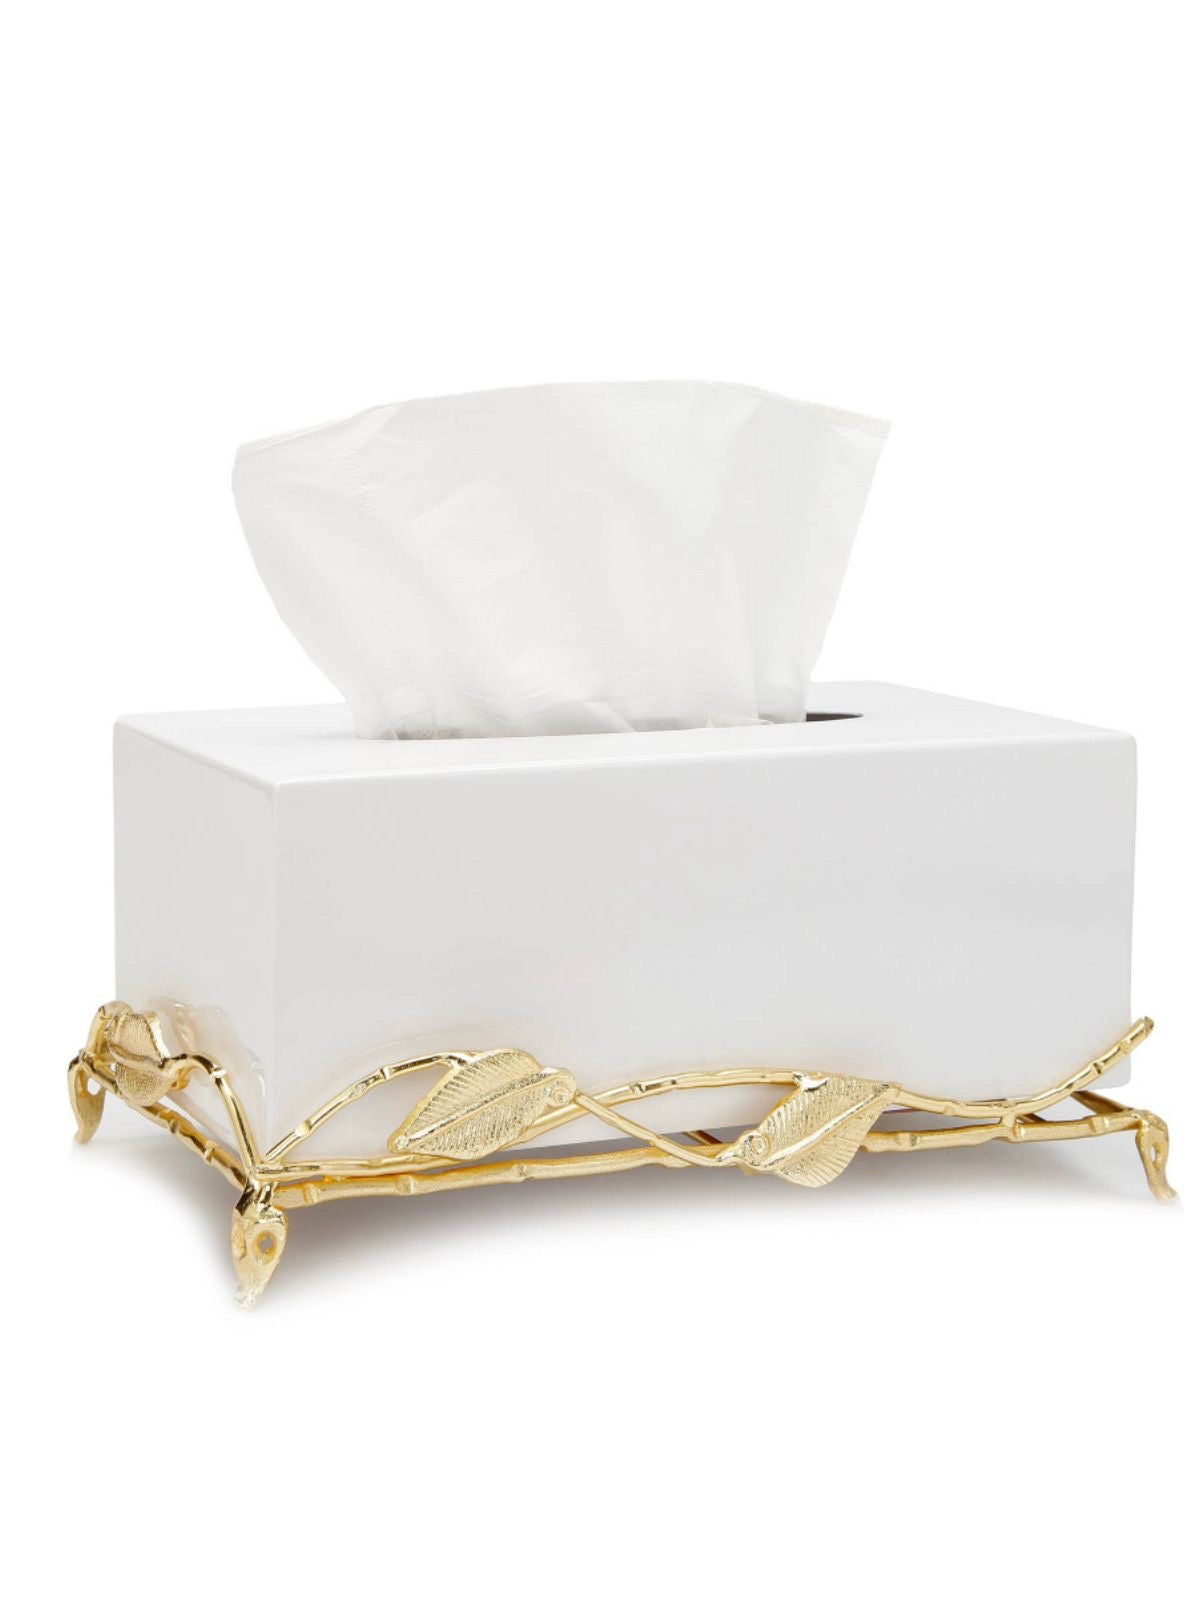 White Marble Tissue Box Holder on Gold Leaf Designed Base.